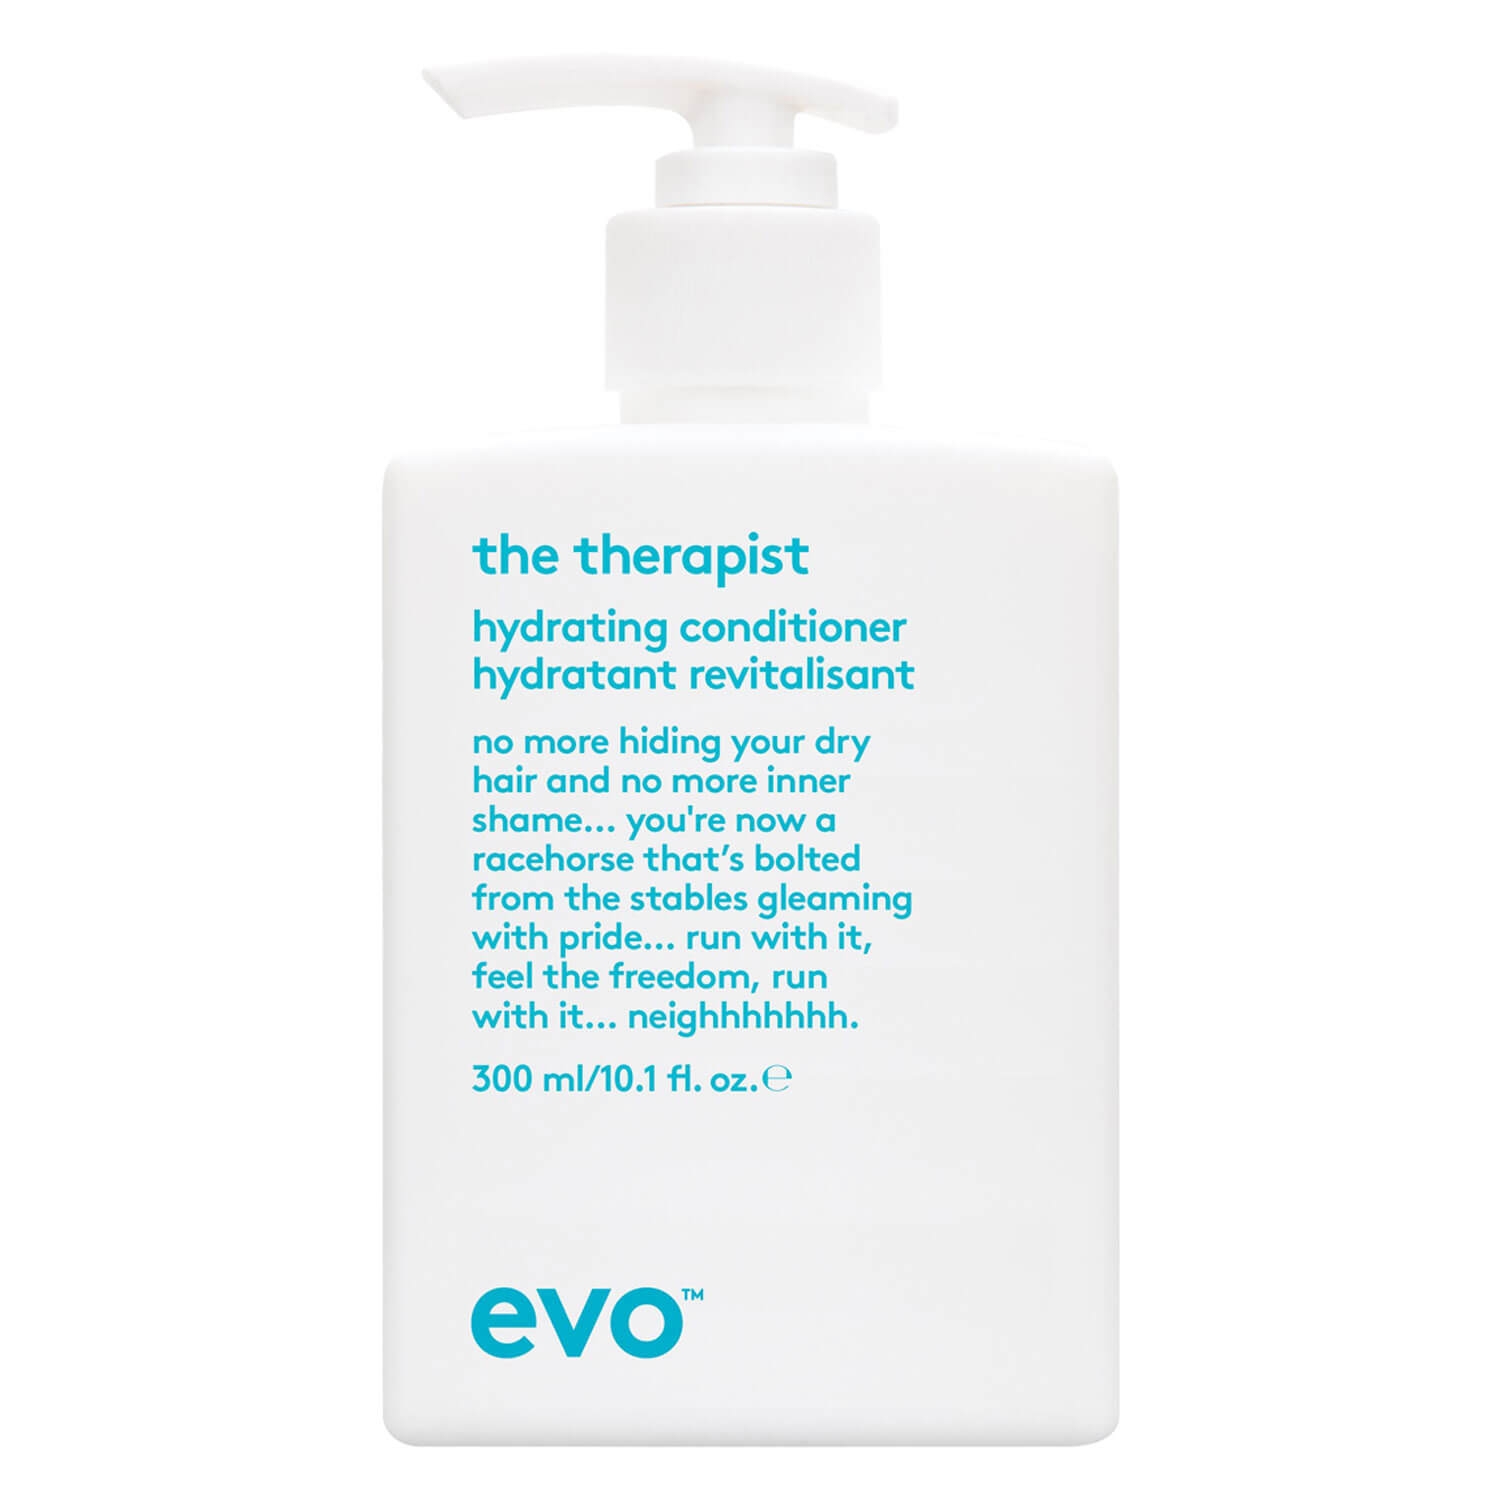 Produktbild von evo calm - the therapist hydrating conditioner